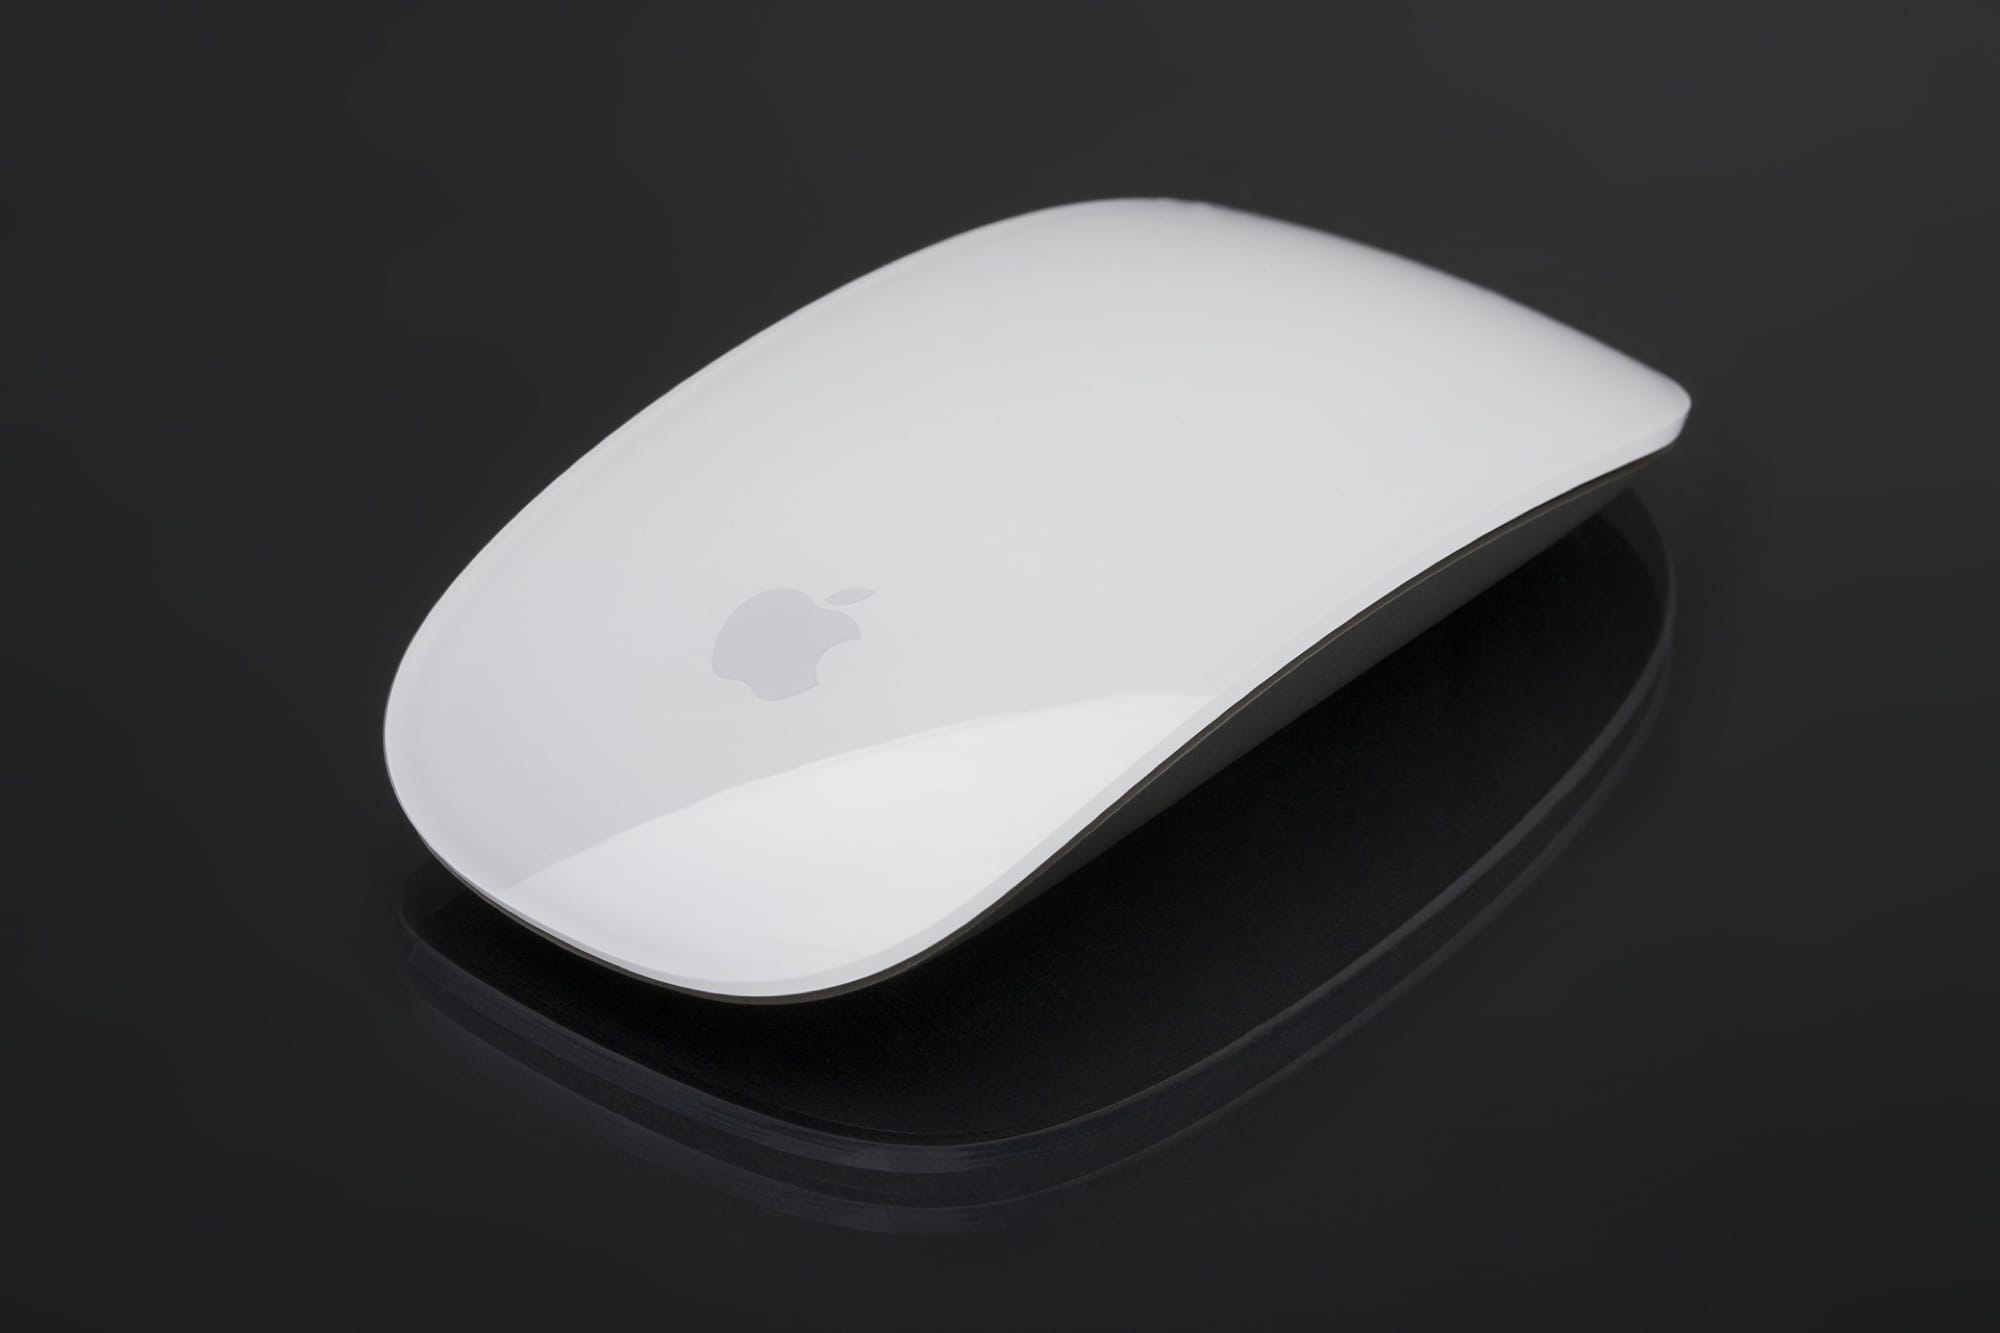 Мышки и клавиатуры для Mac